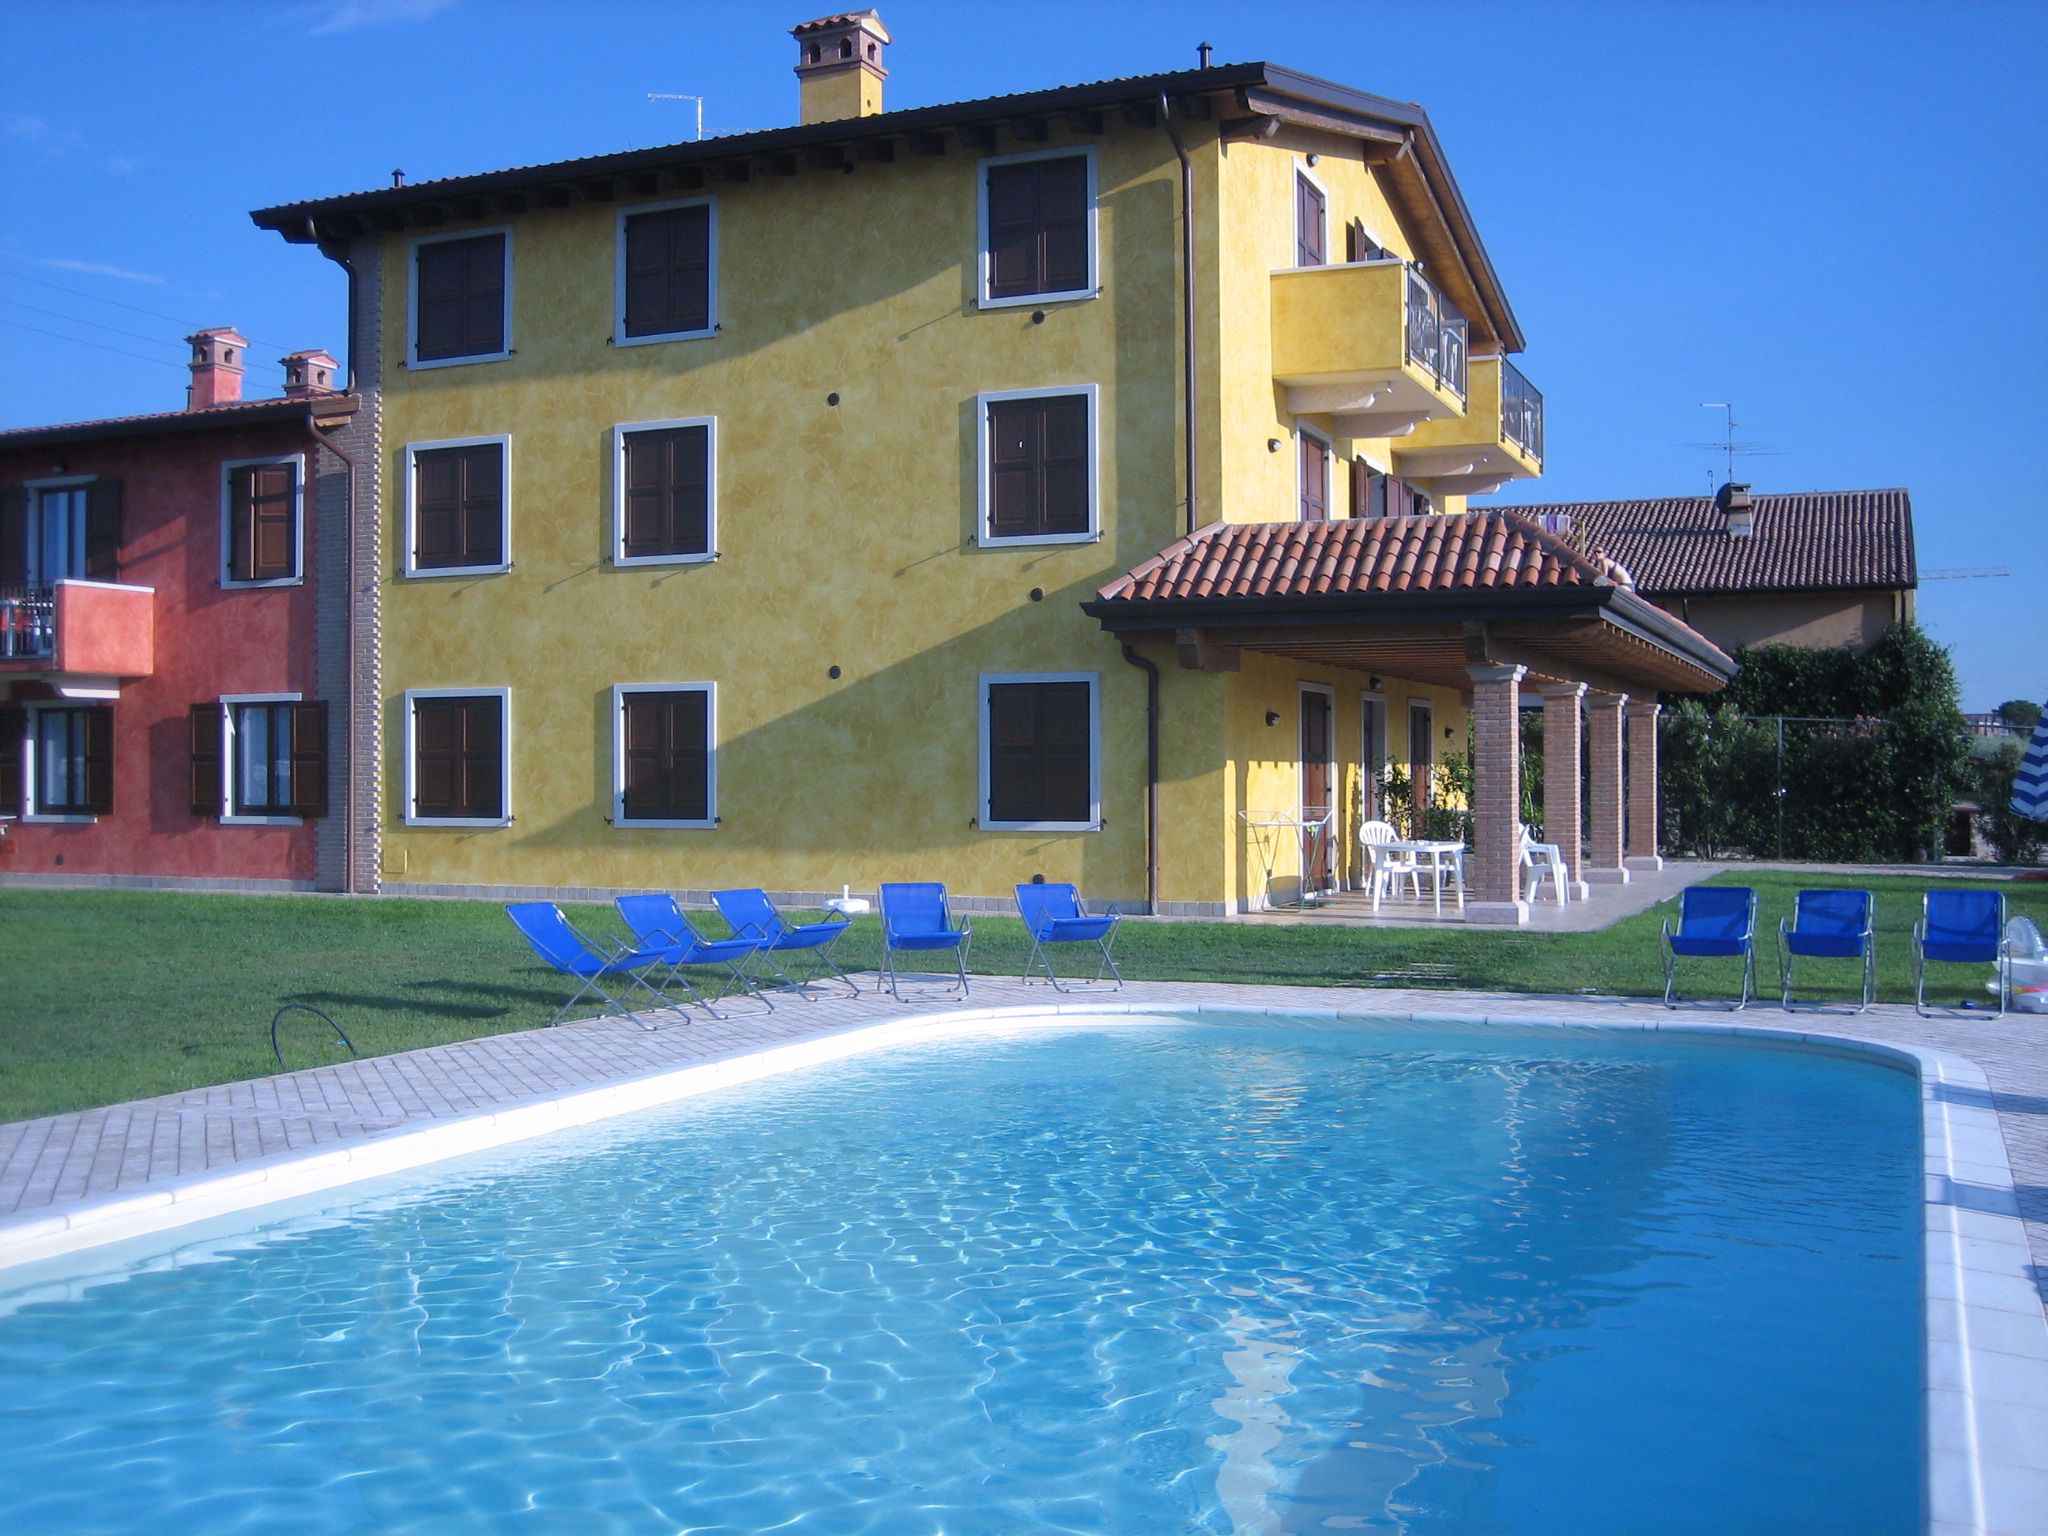 Ferienwohnung mit Pool (279621), Lazise, Gardasee, Venetien, Italien, Bild 1